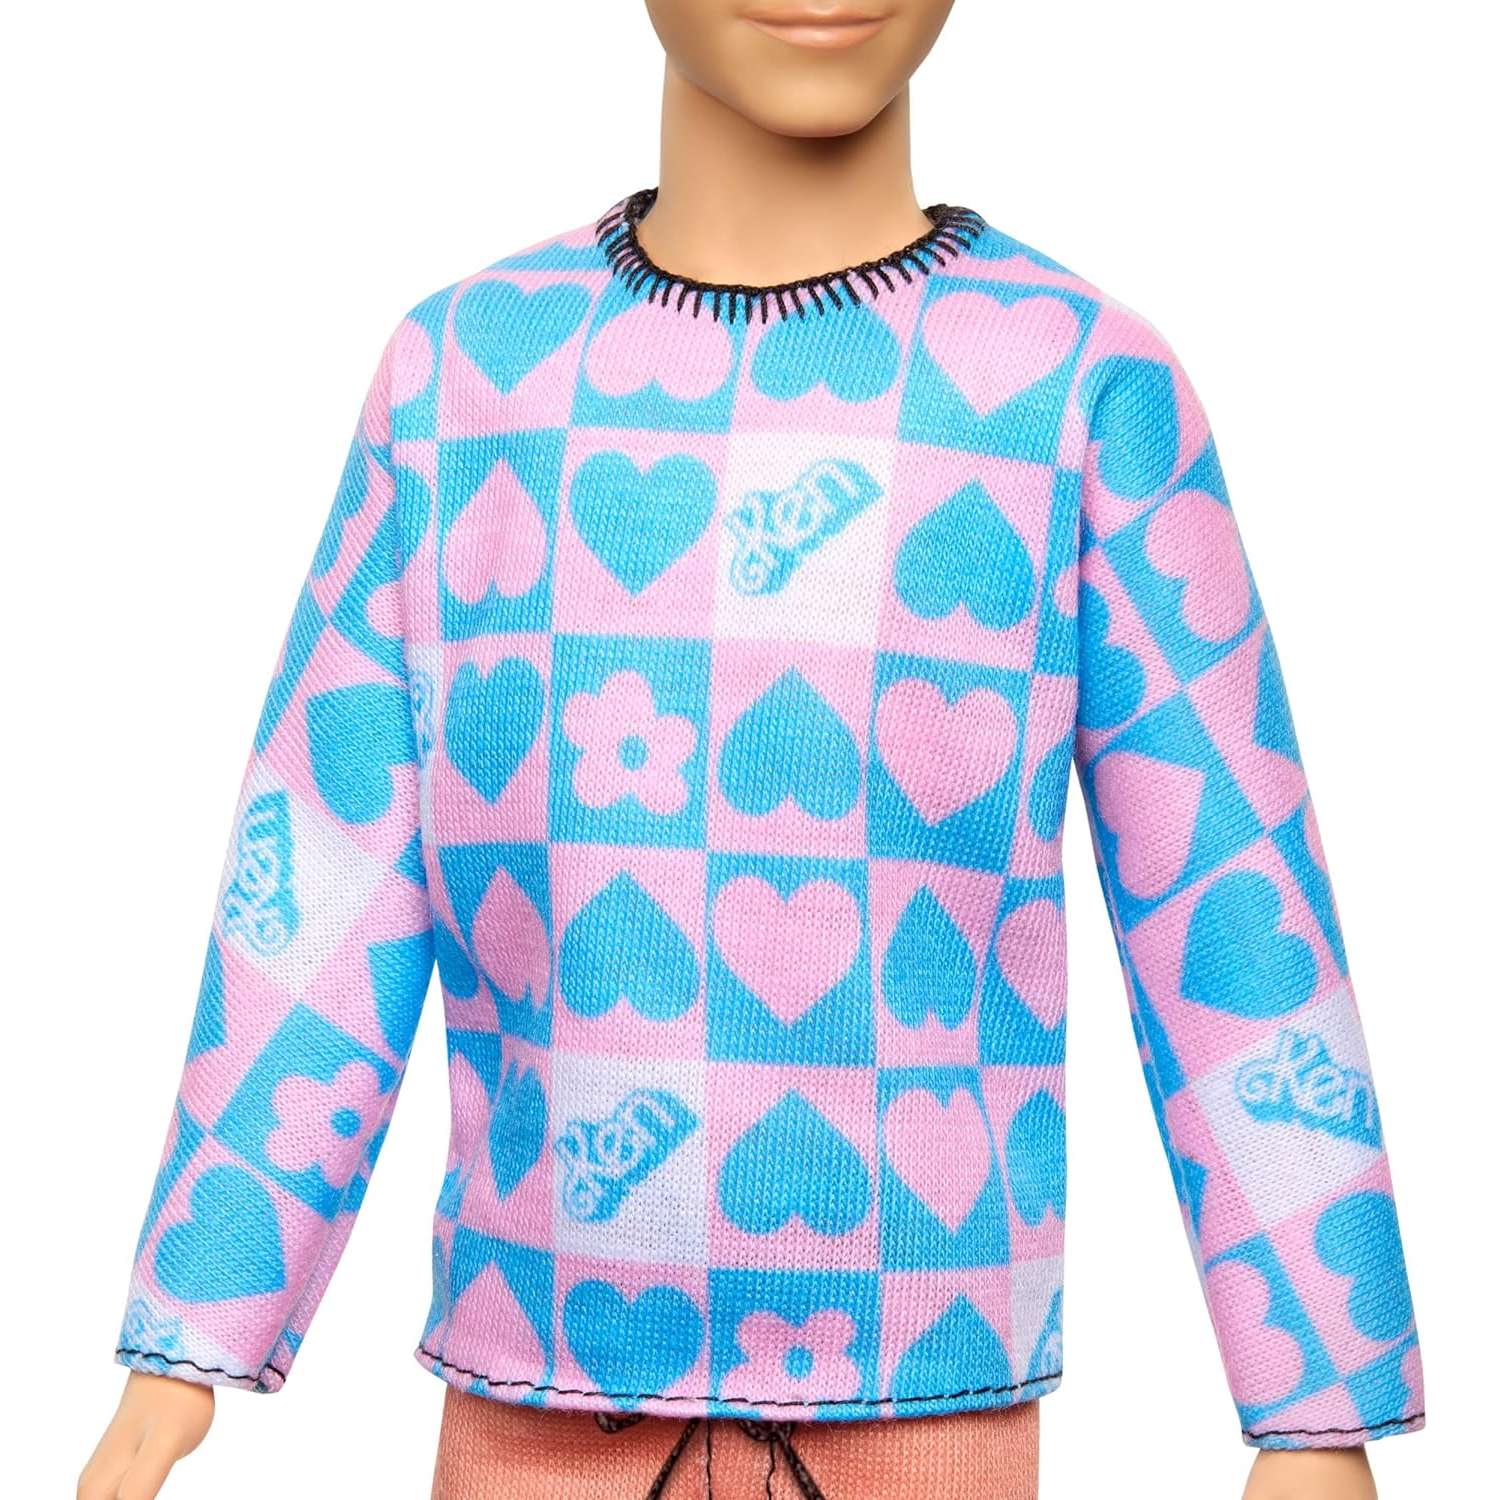 Кукла Barbie Fashionista Ken голубой и розовый свитер HRH24 HRH24 - фото 4